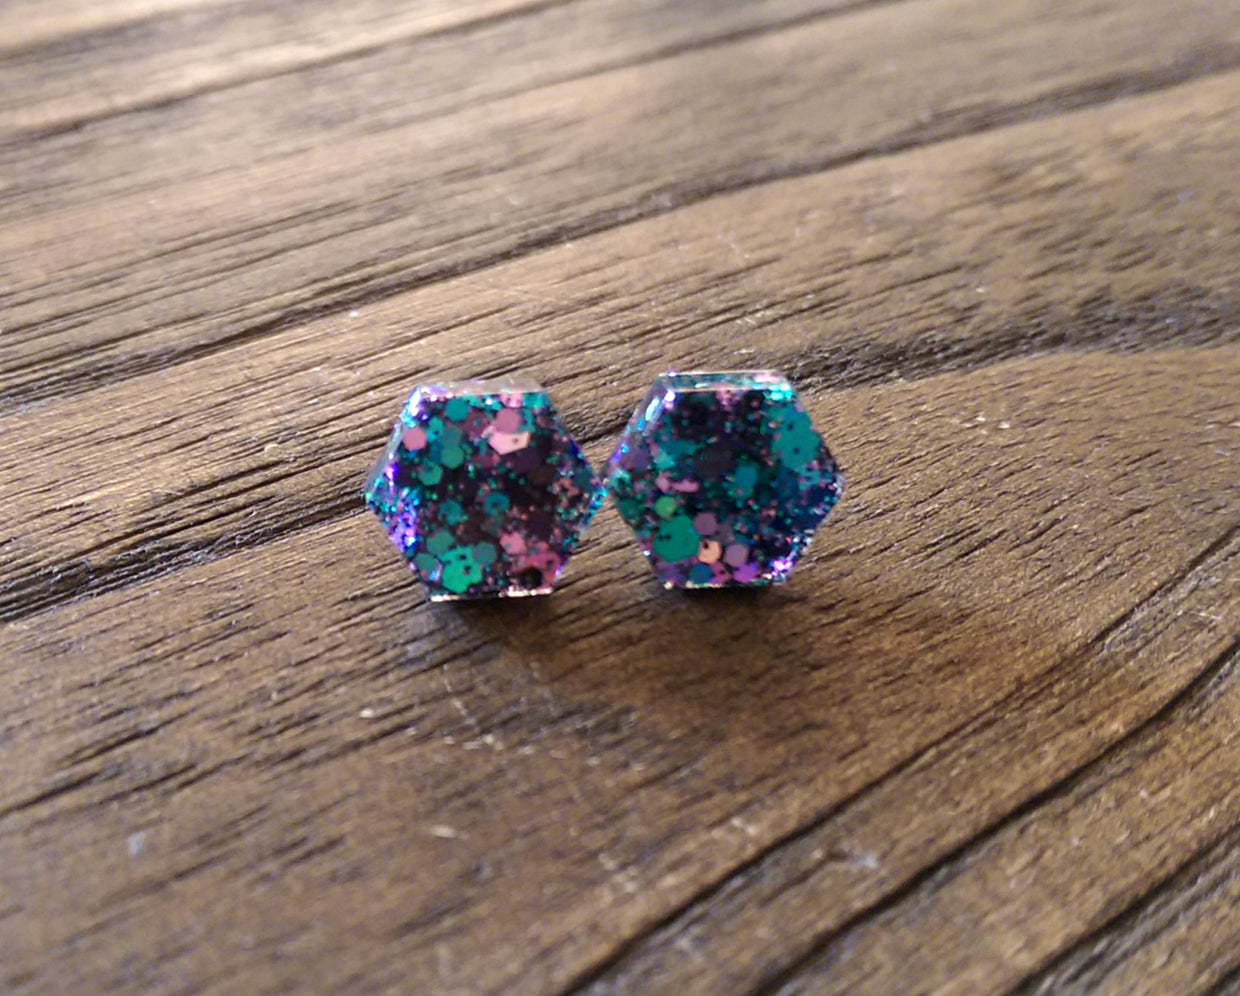 Hexagon Resin Stud Earrings, Teal Black Pink Glitter Earrings. Stainless Steel Stud Earrings. 10mm - Silver and Resin Designs